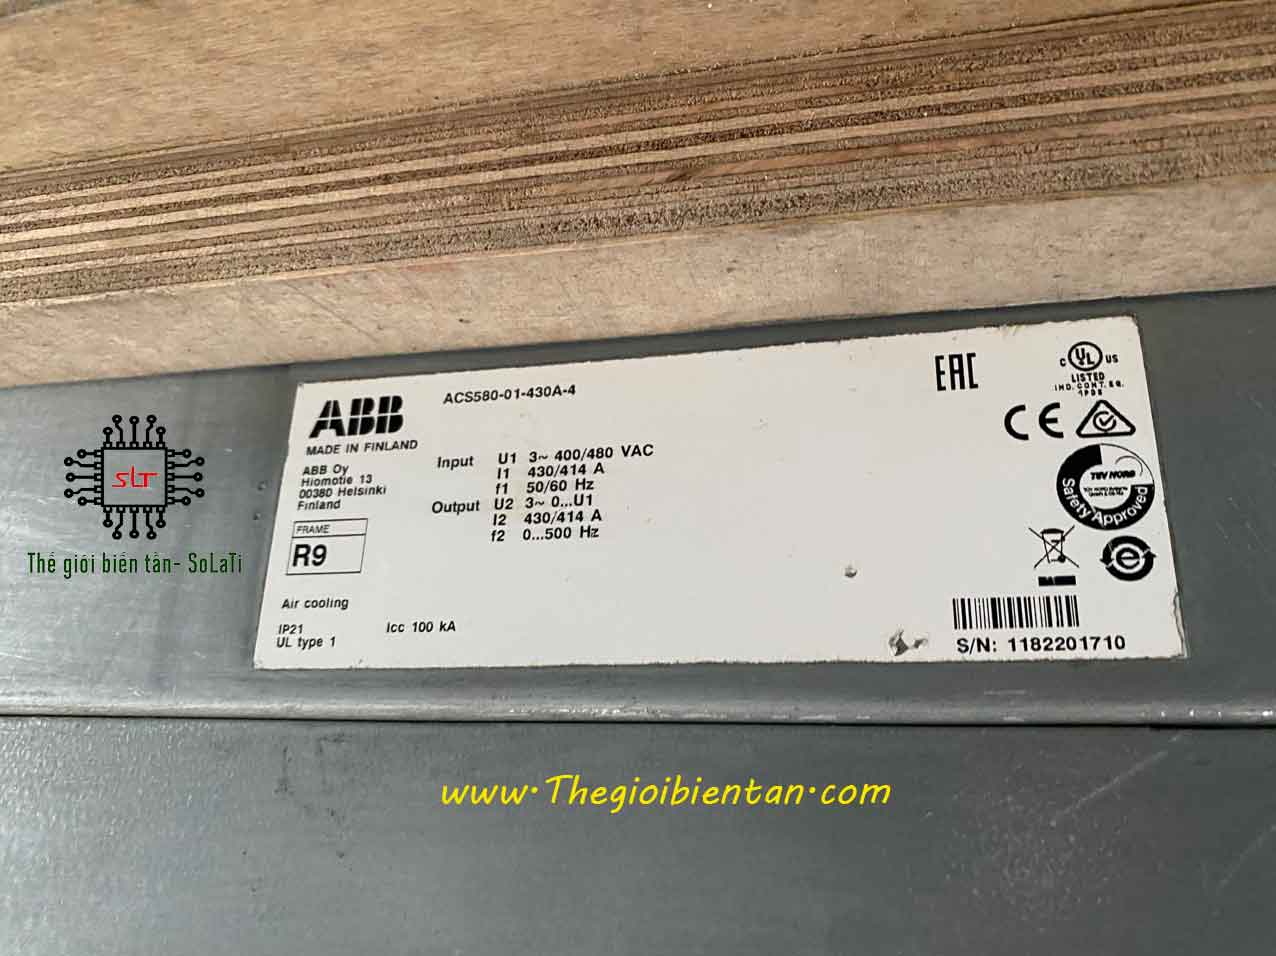 Biến tần ABB ACS580 01-430A-4